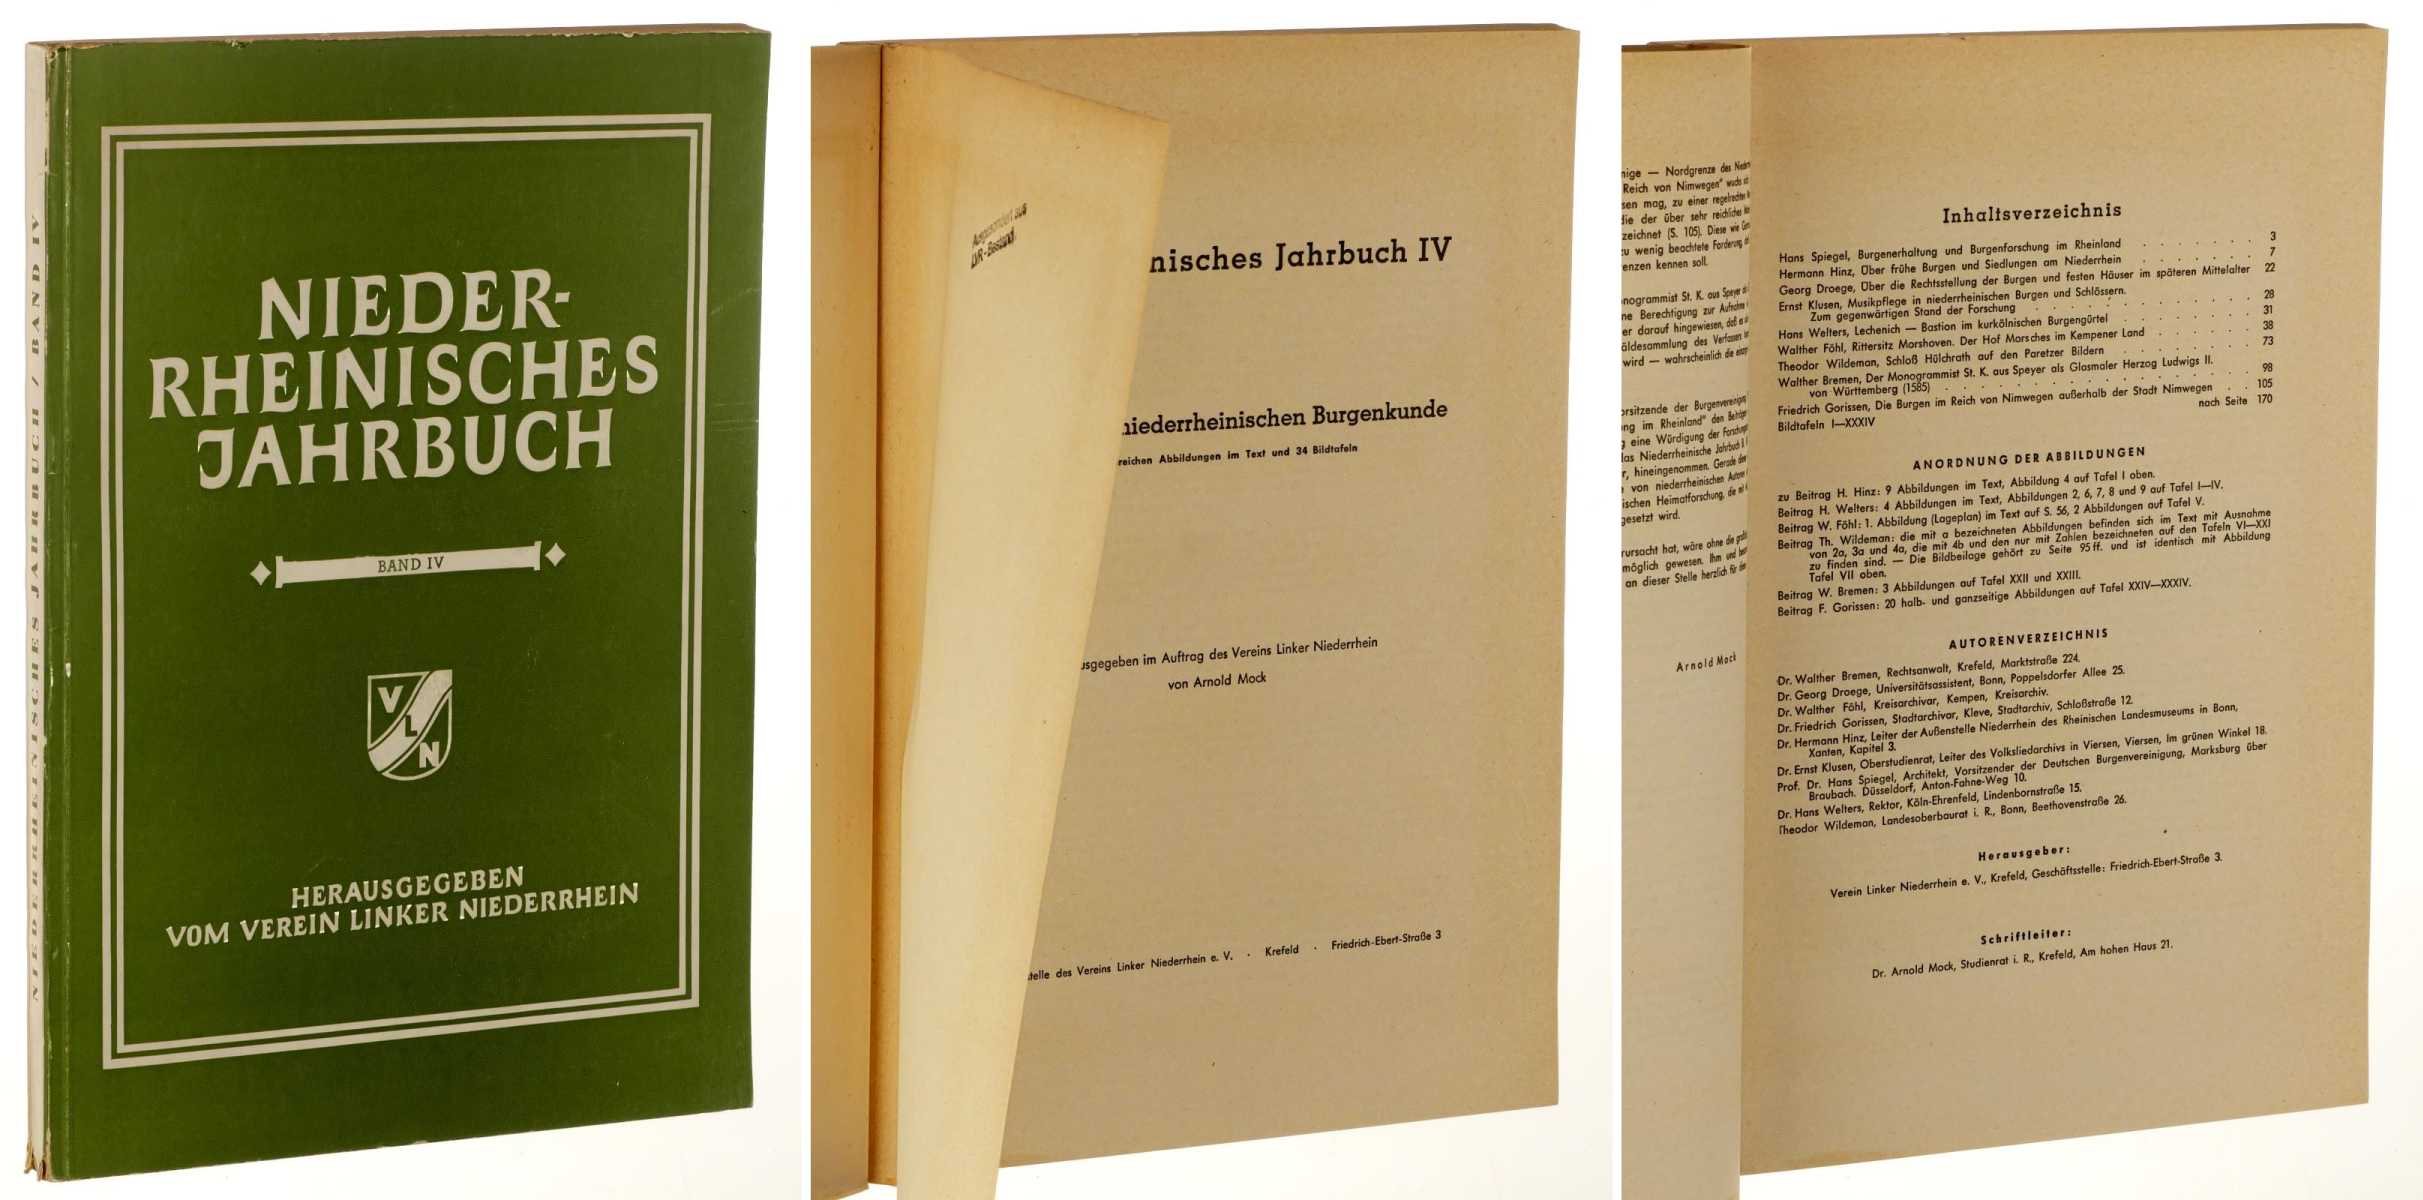   Niederrheinisches Jahrbuch. Band IV: Beiträge zur niederrheinischen Burgenkunde. Mit zahlr. Abb. im Text und 34 Bildtafeln. Hrsg. ... von Arnold Mock. 